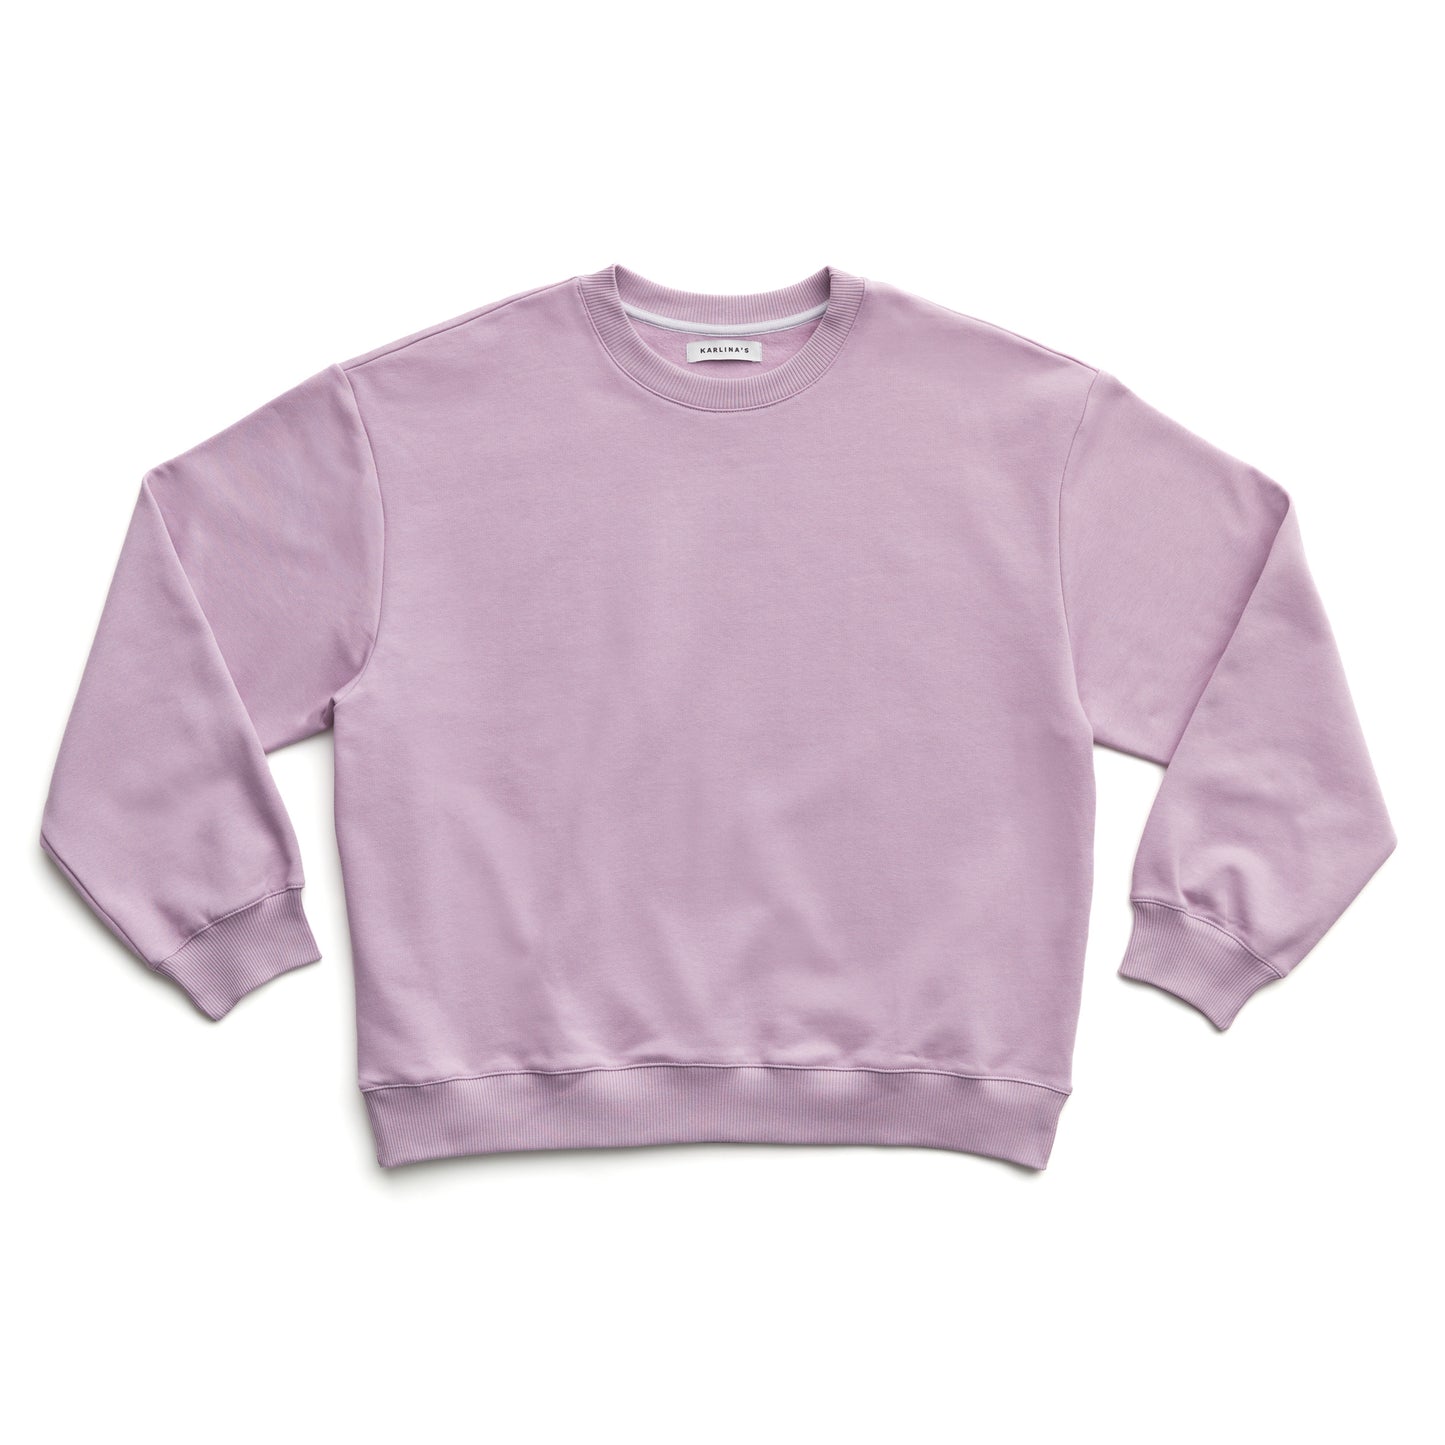 Kiko Sweatshirt in Lilac